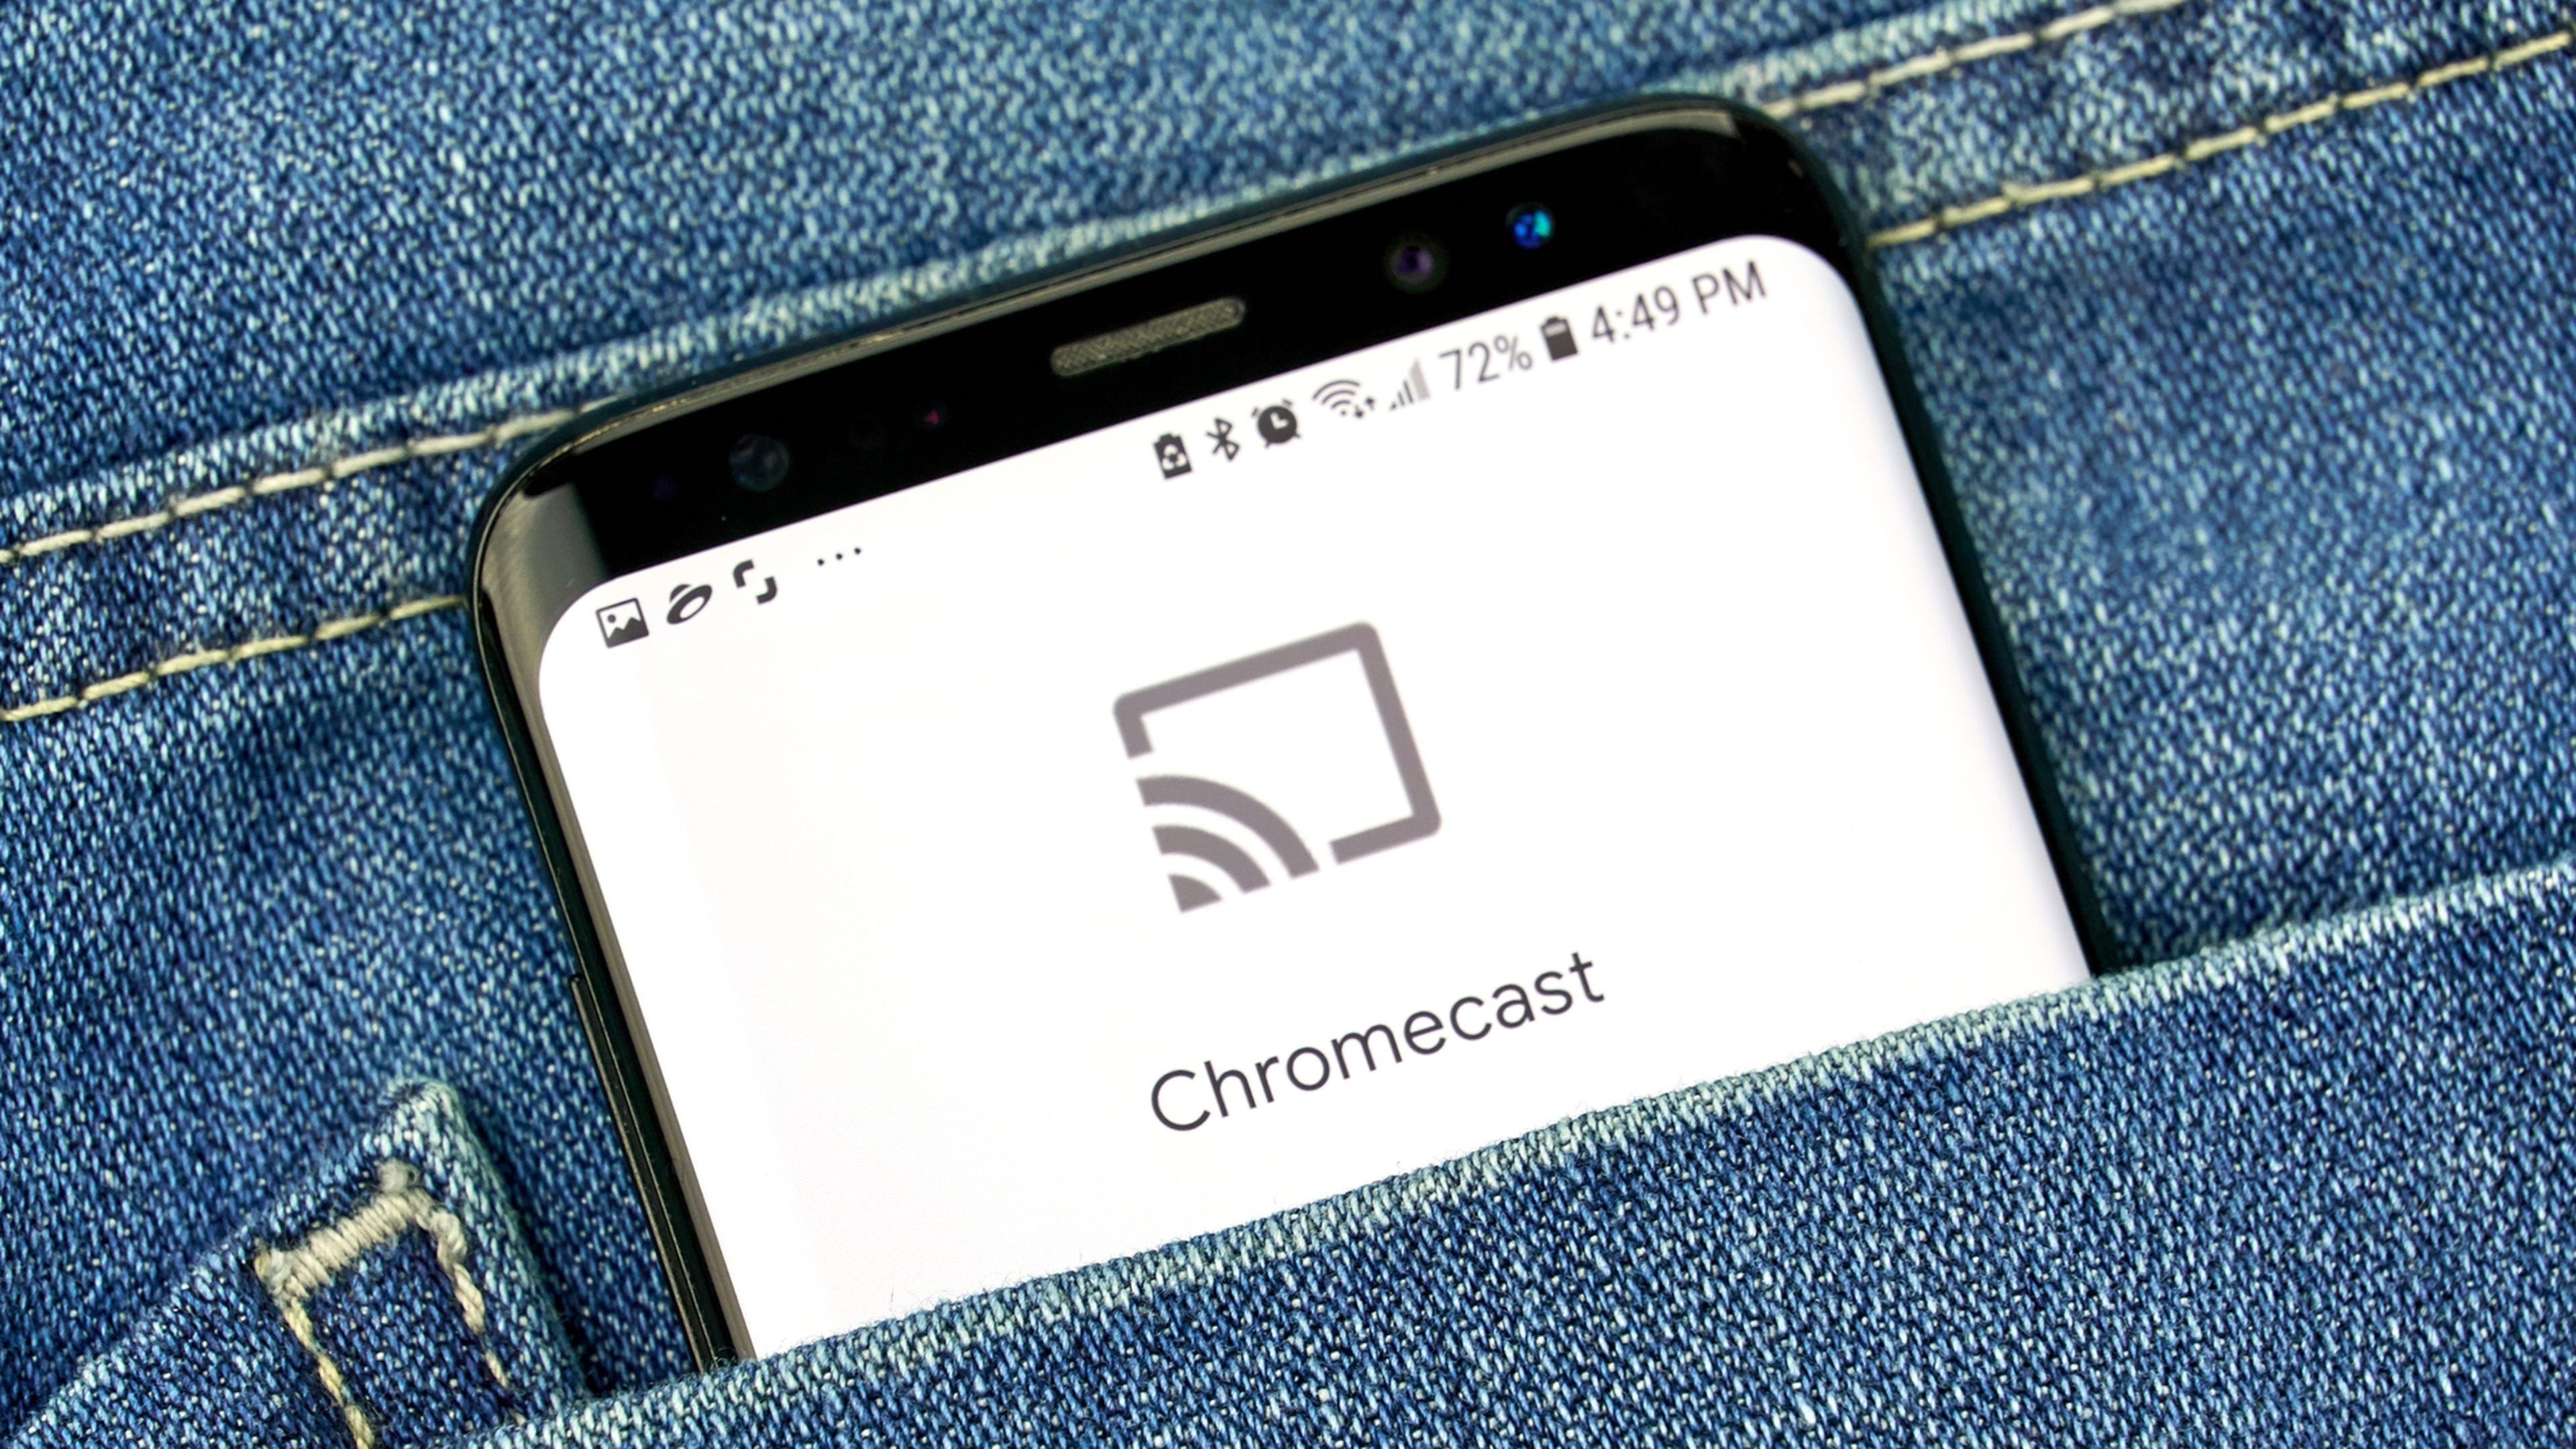 ¿Qué plataformas se pueden ver con Chromecast?